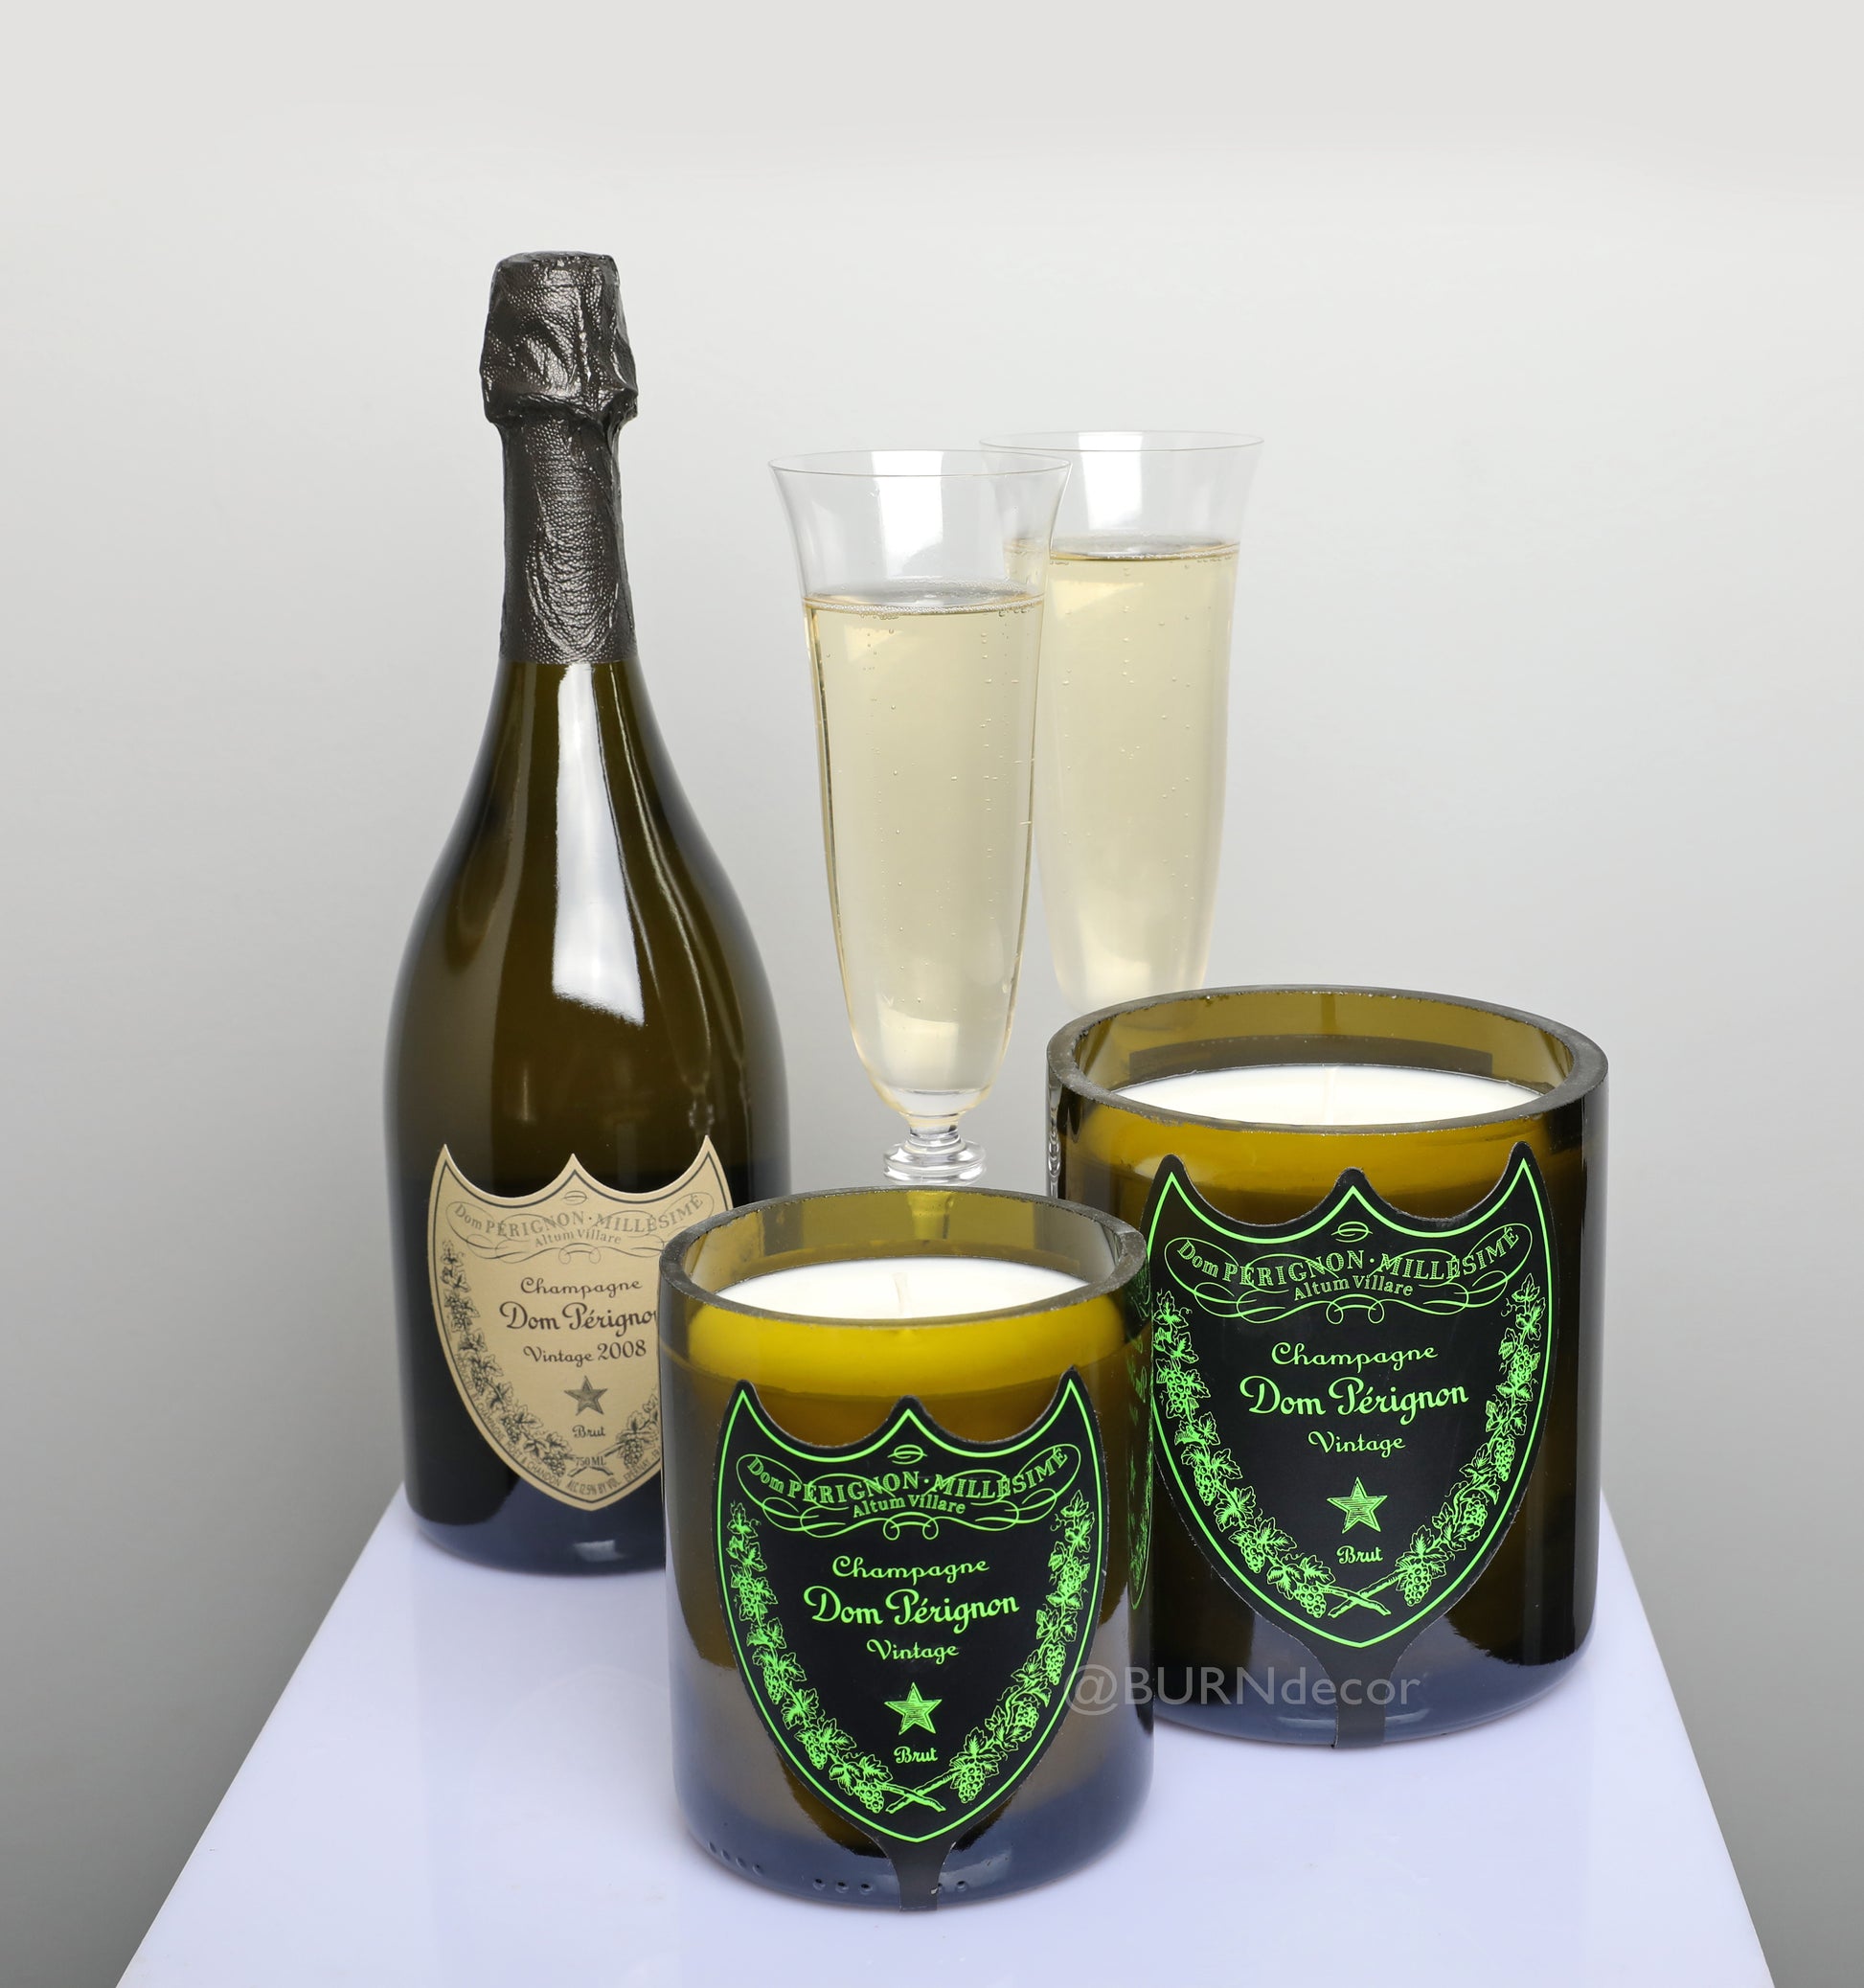 Custom Dom Perignon Champagne Bottle Scented Candle – Burn decor